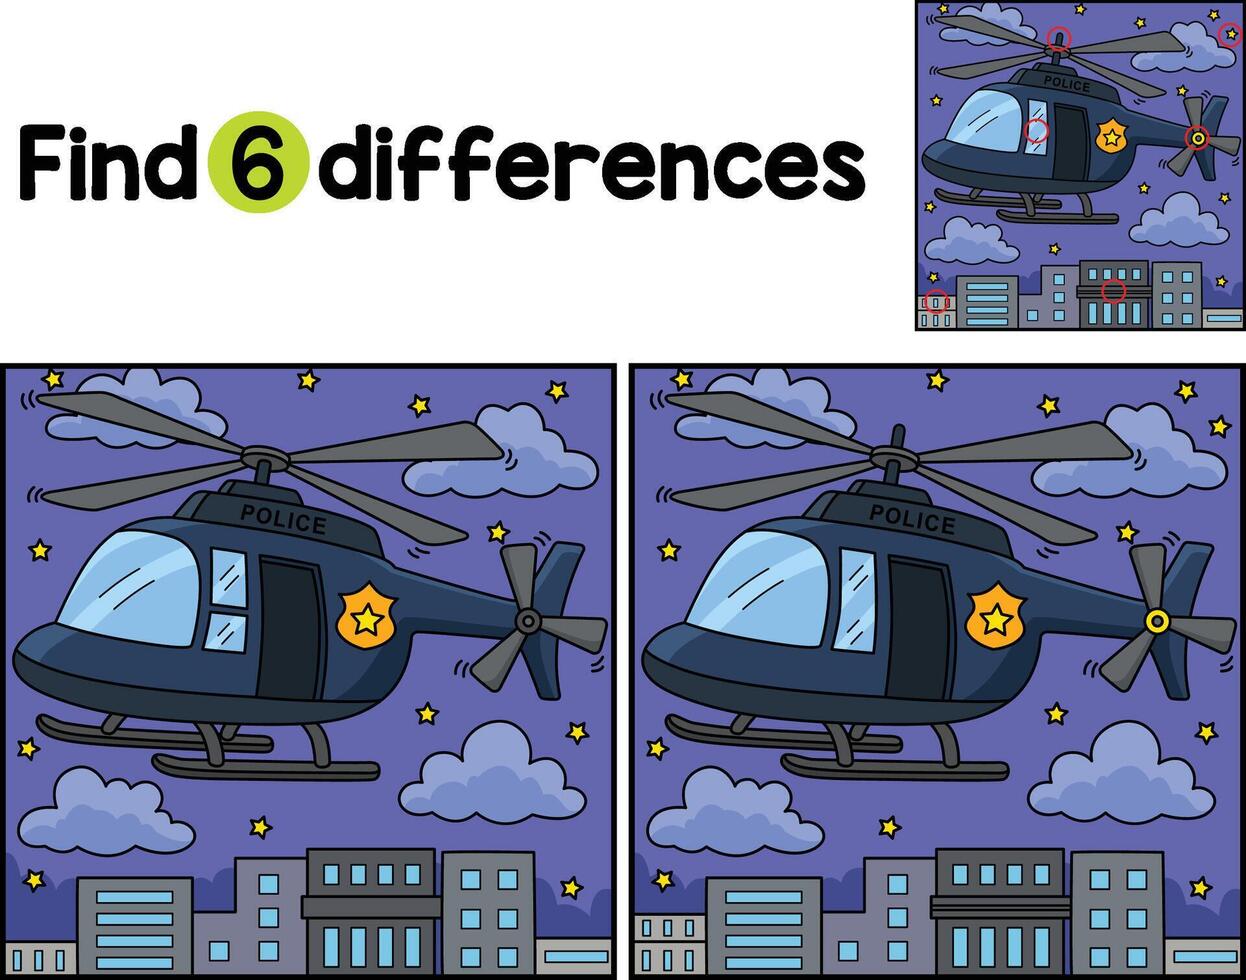 Polizei Hubschrauber finden das Unterschiede vektor